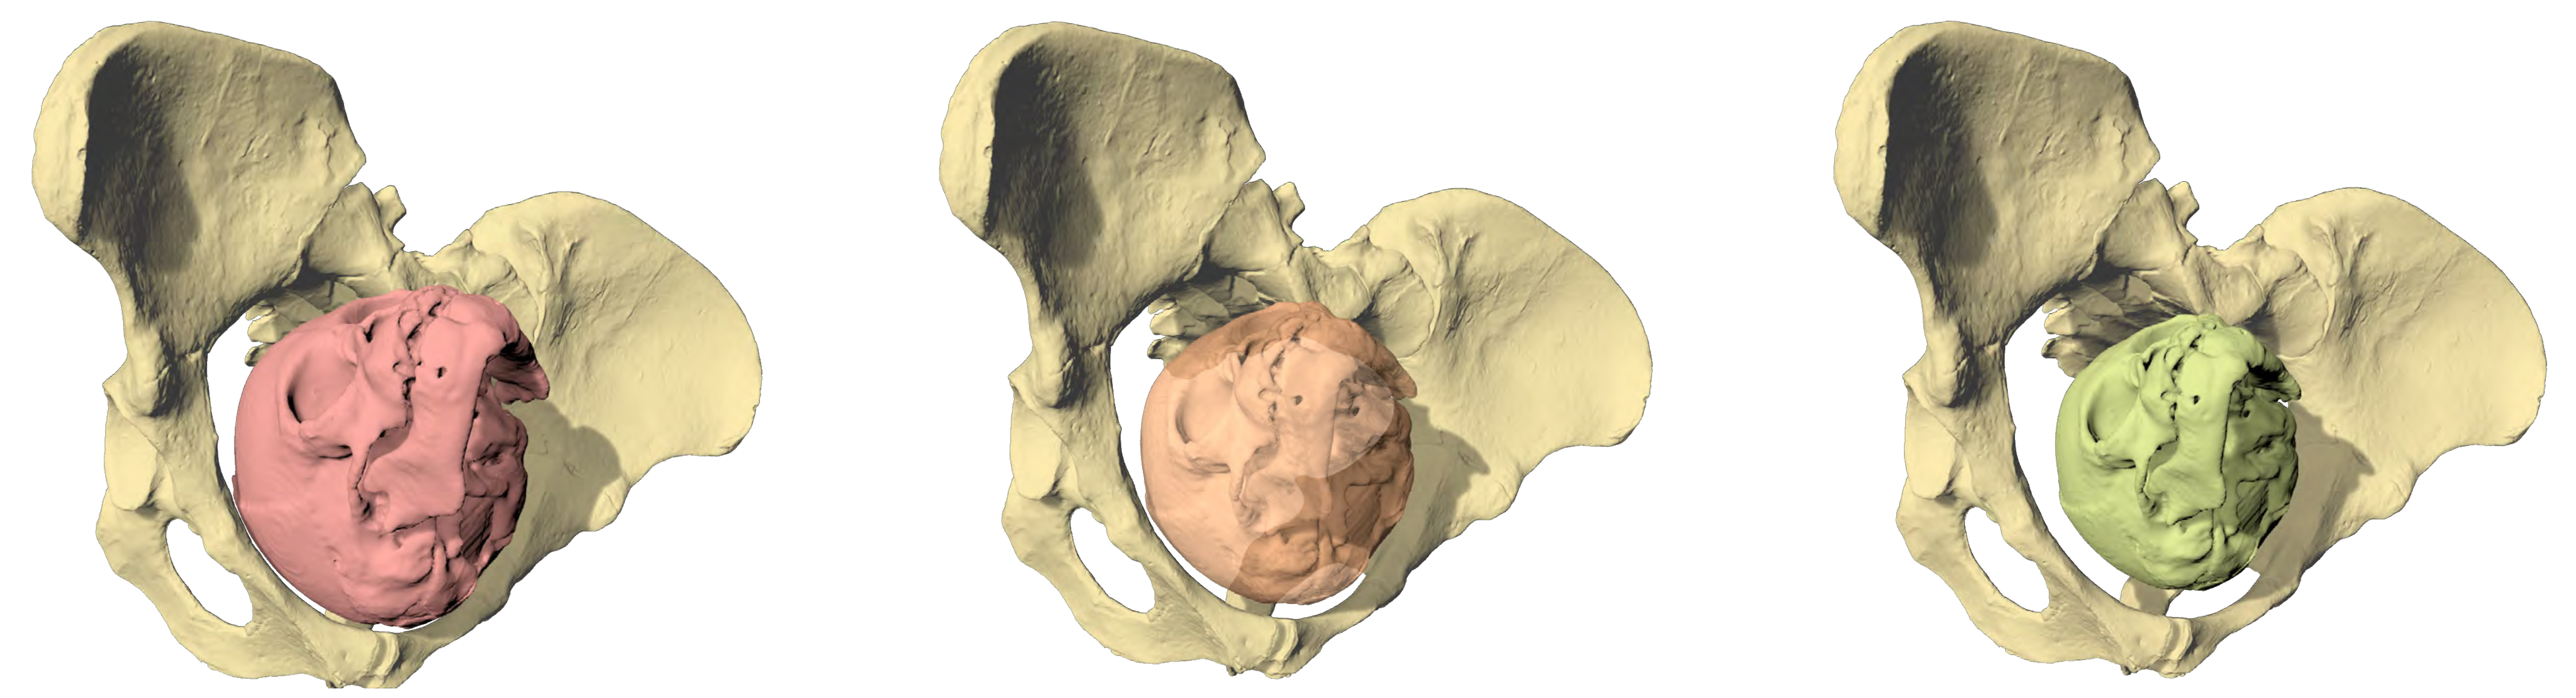 Geburtssimulation von Lucy (Australopithecus afarensis) mit drei unterschiedlich grossen Fetuskopfgrössen. Nur eine Gehirngrösse von maximal 30 Prozent der Erwachsenengrösse (rechts) passt durch den Geburtskanal. (Bild: Martin Häusler, UZH)